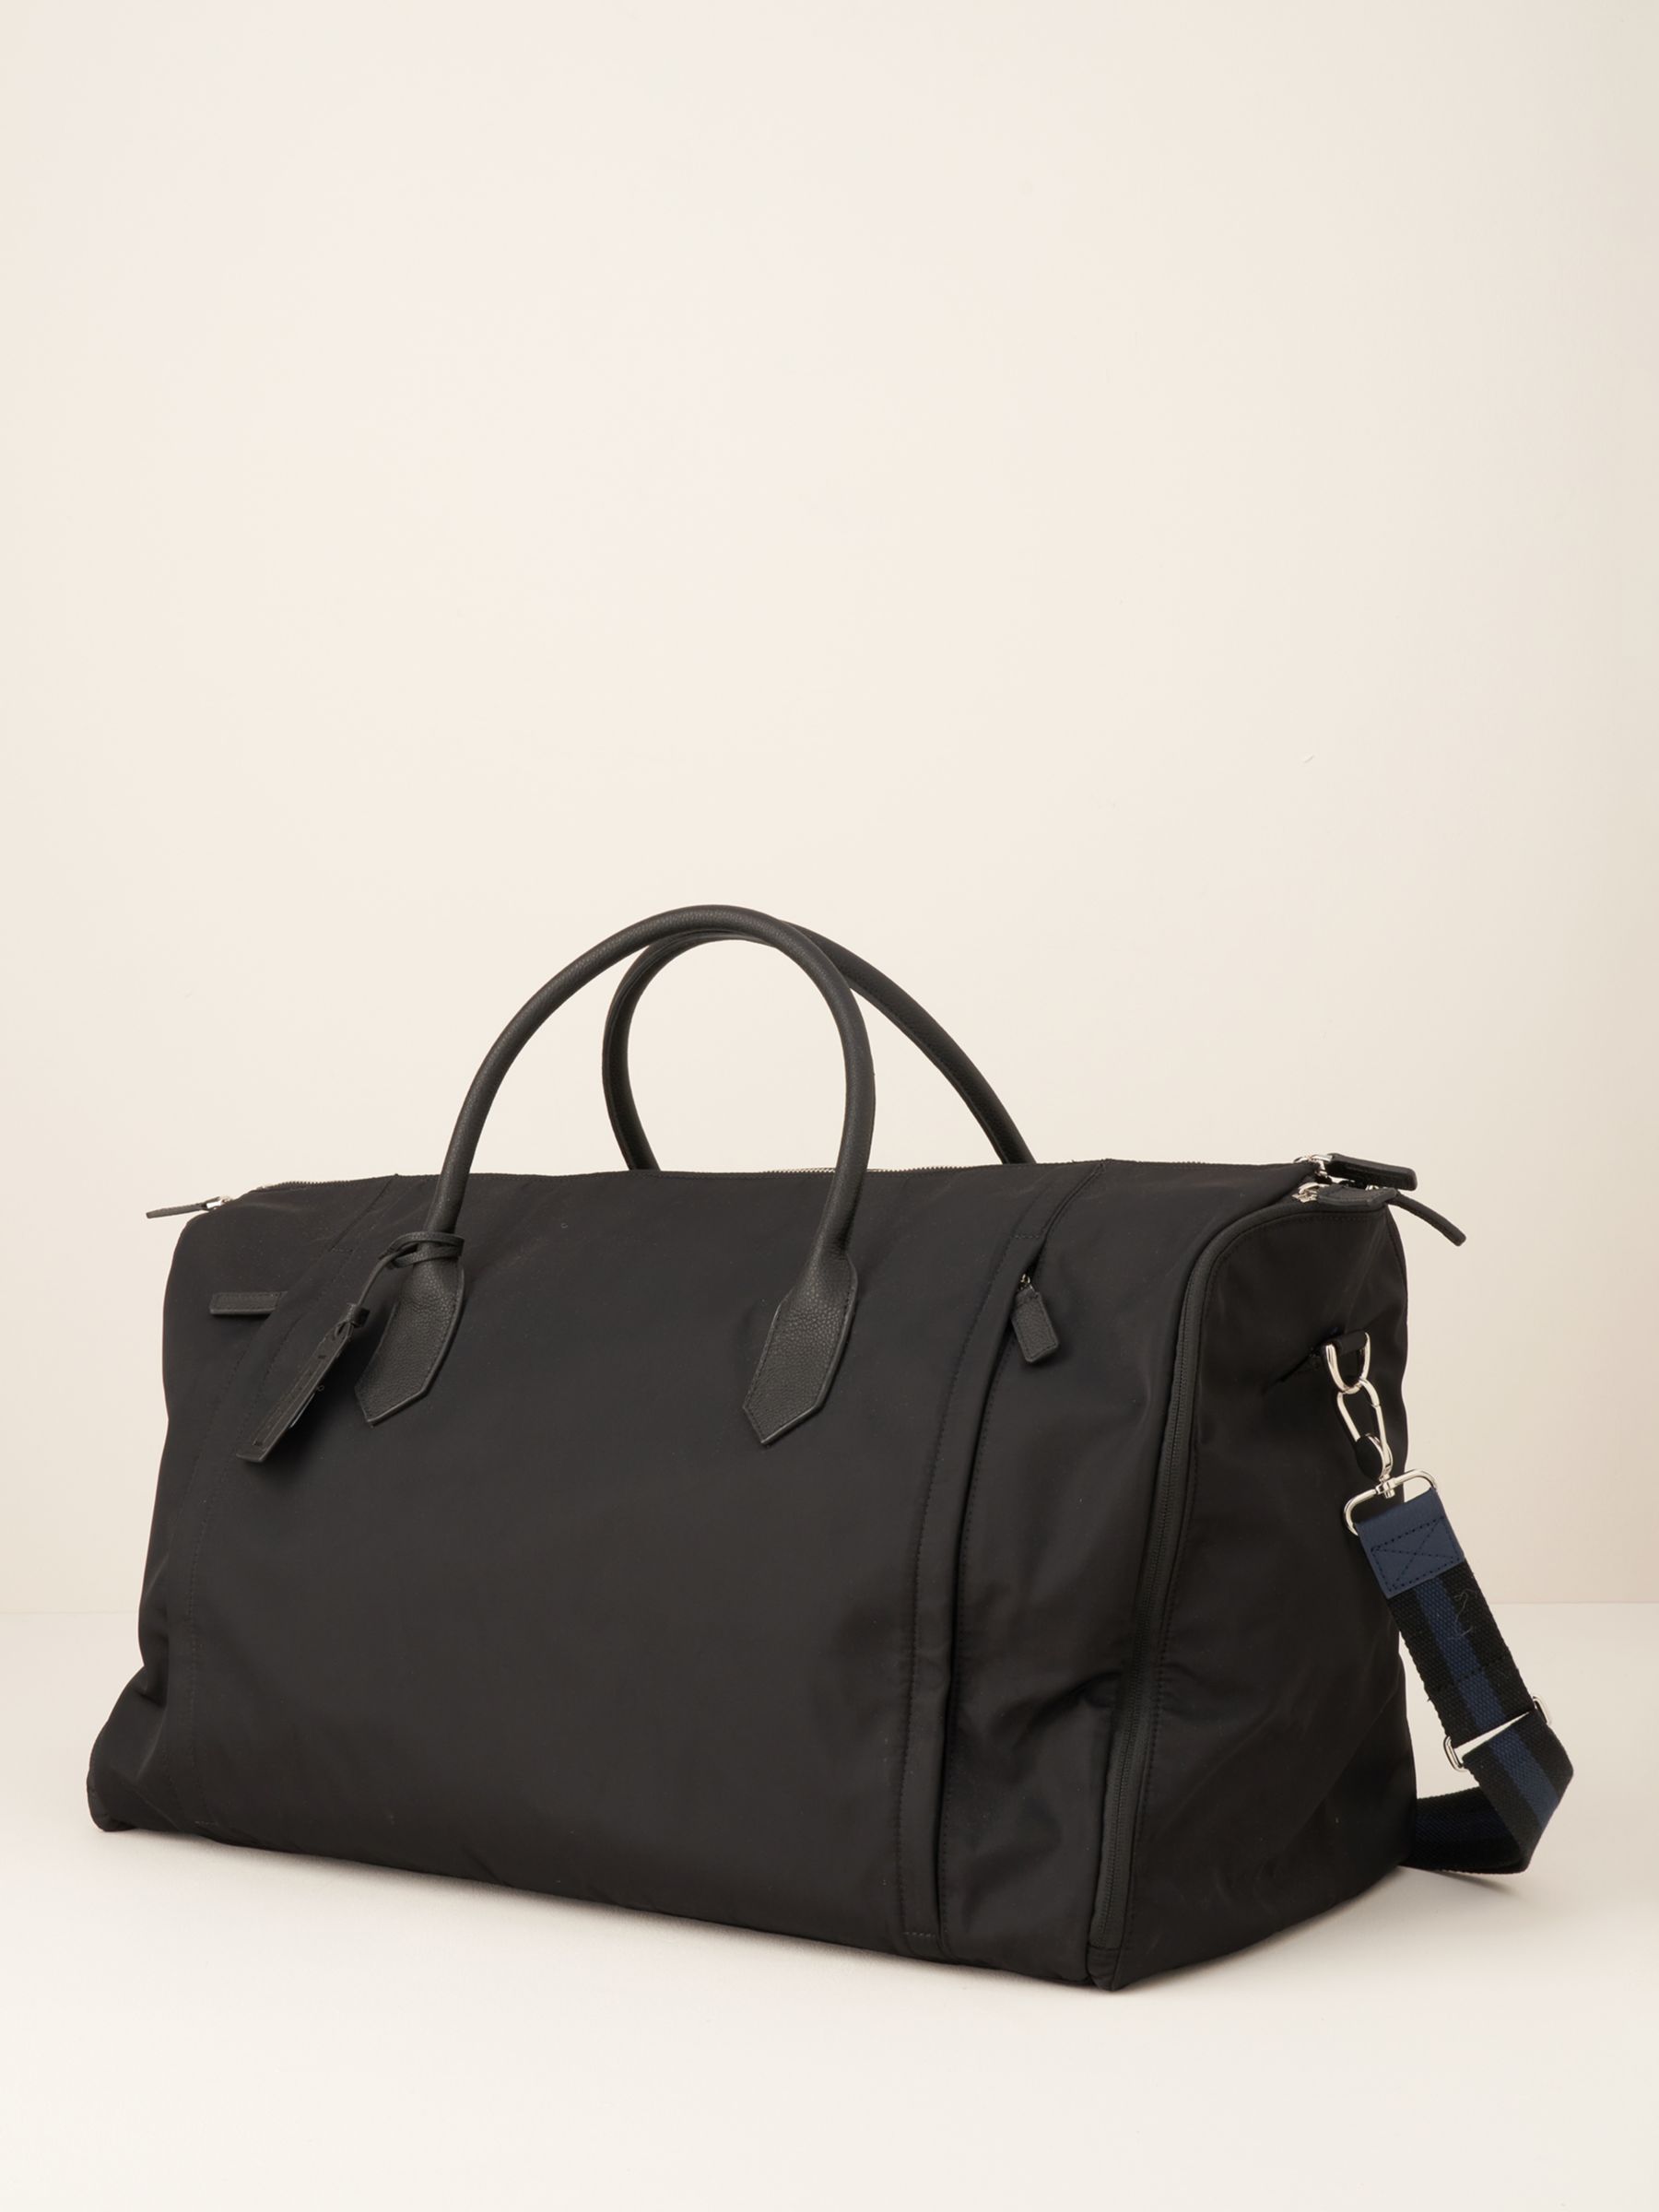 Truly His Nibs Plain Weekender Bag, Black at John Lewis & Partners